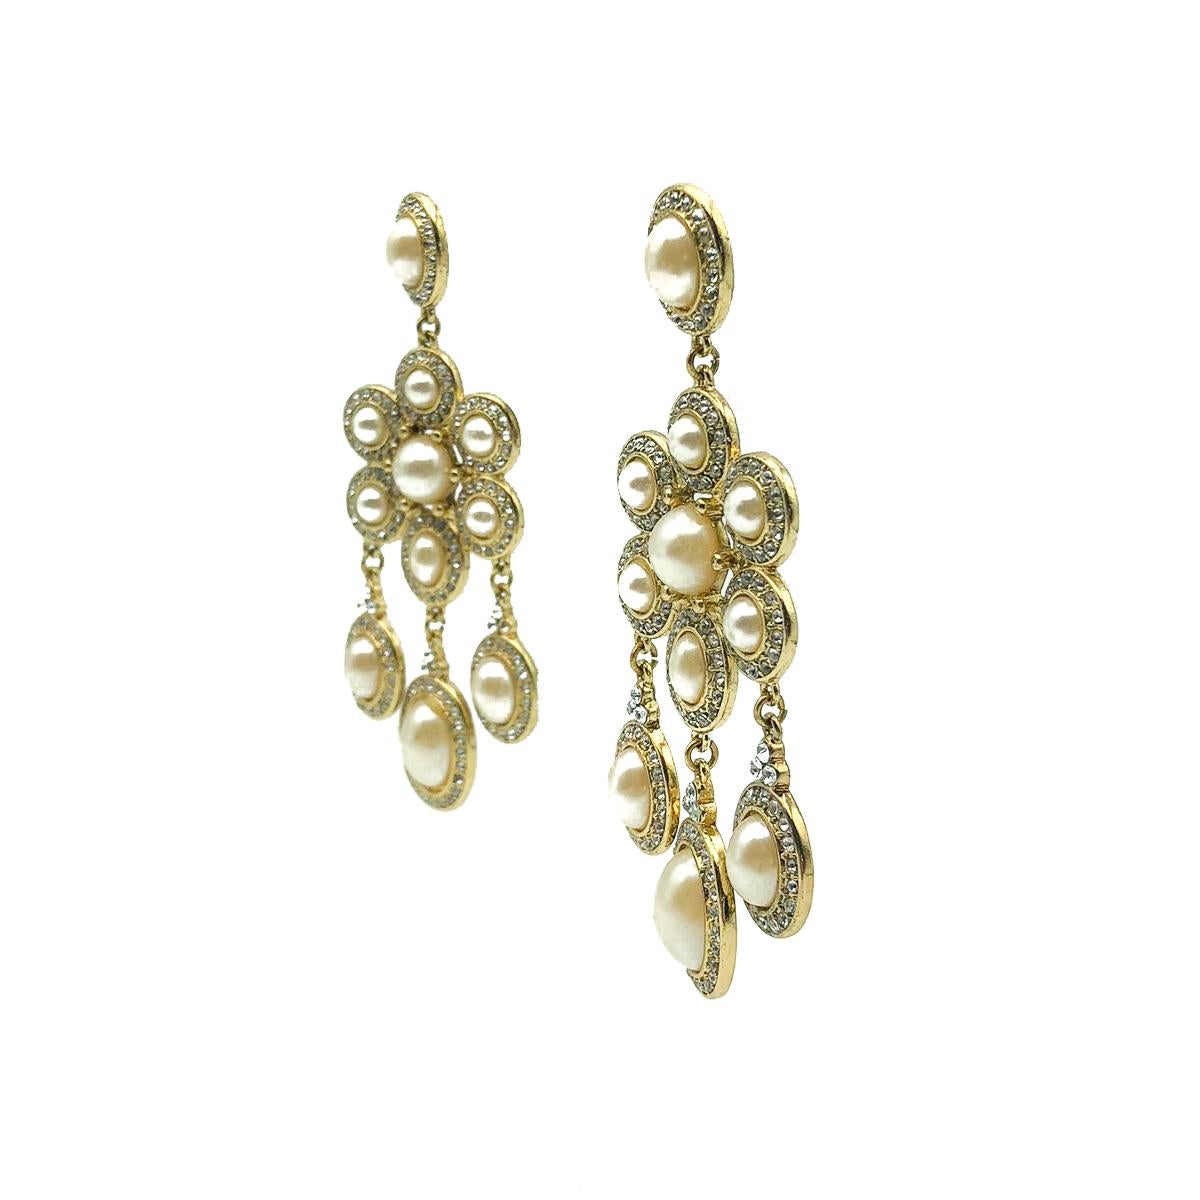 Une paire de boucles d'oreilles en cascade Monet en état de marche. Les cristaux et les perles brillantes sont disposés dans un style girandole, qui était à l'origine le summum de la mode dans la société géorgienne. Réalisé en métal doré avec des